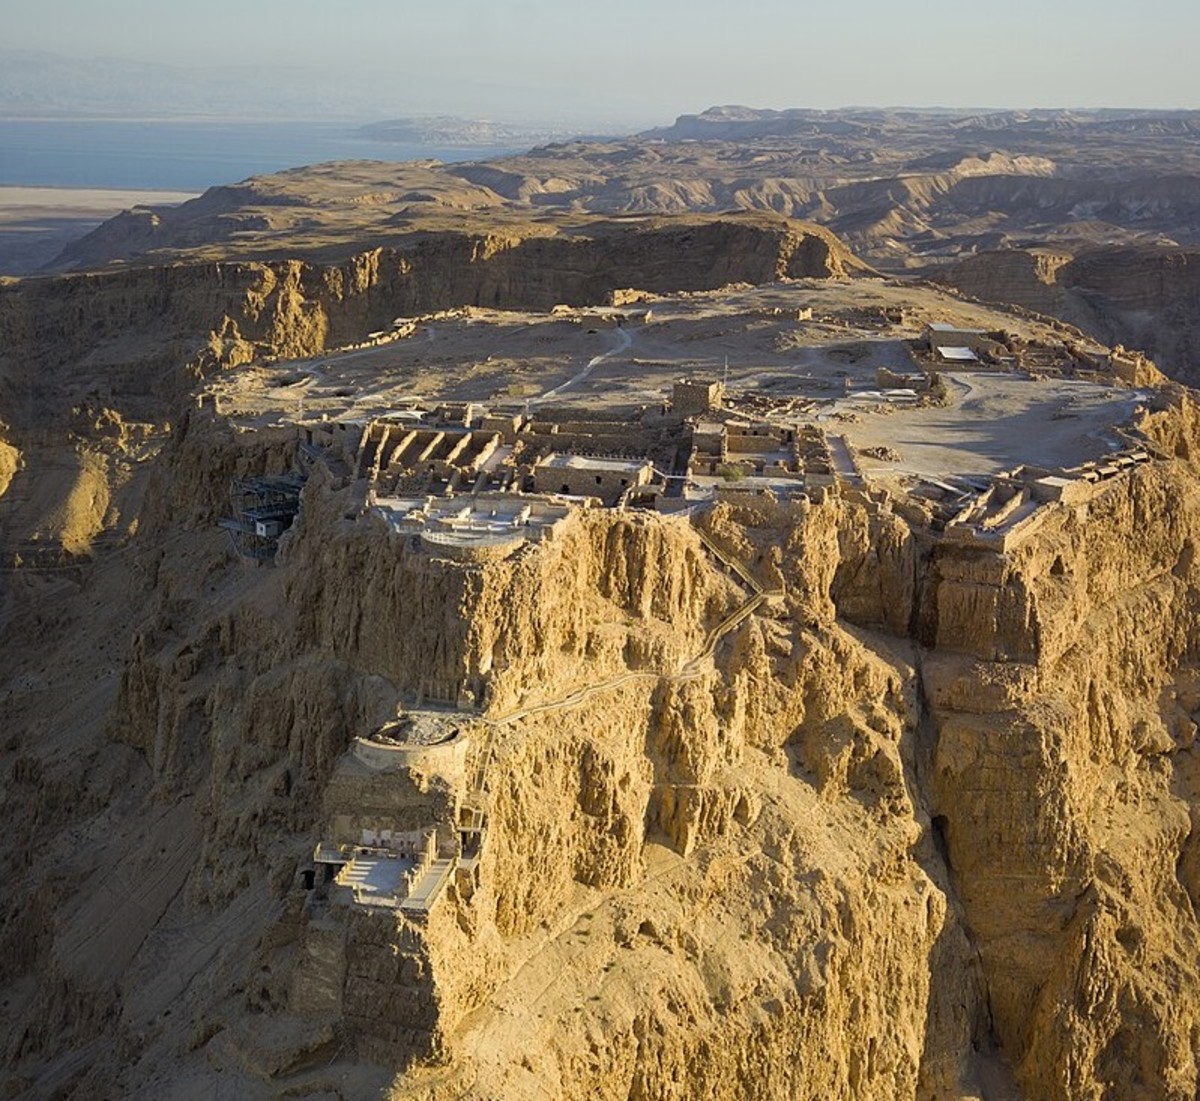 King Herod the Great’s Palace-Fortress at Masada